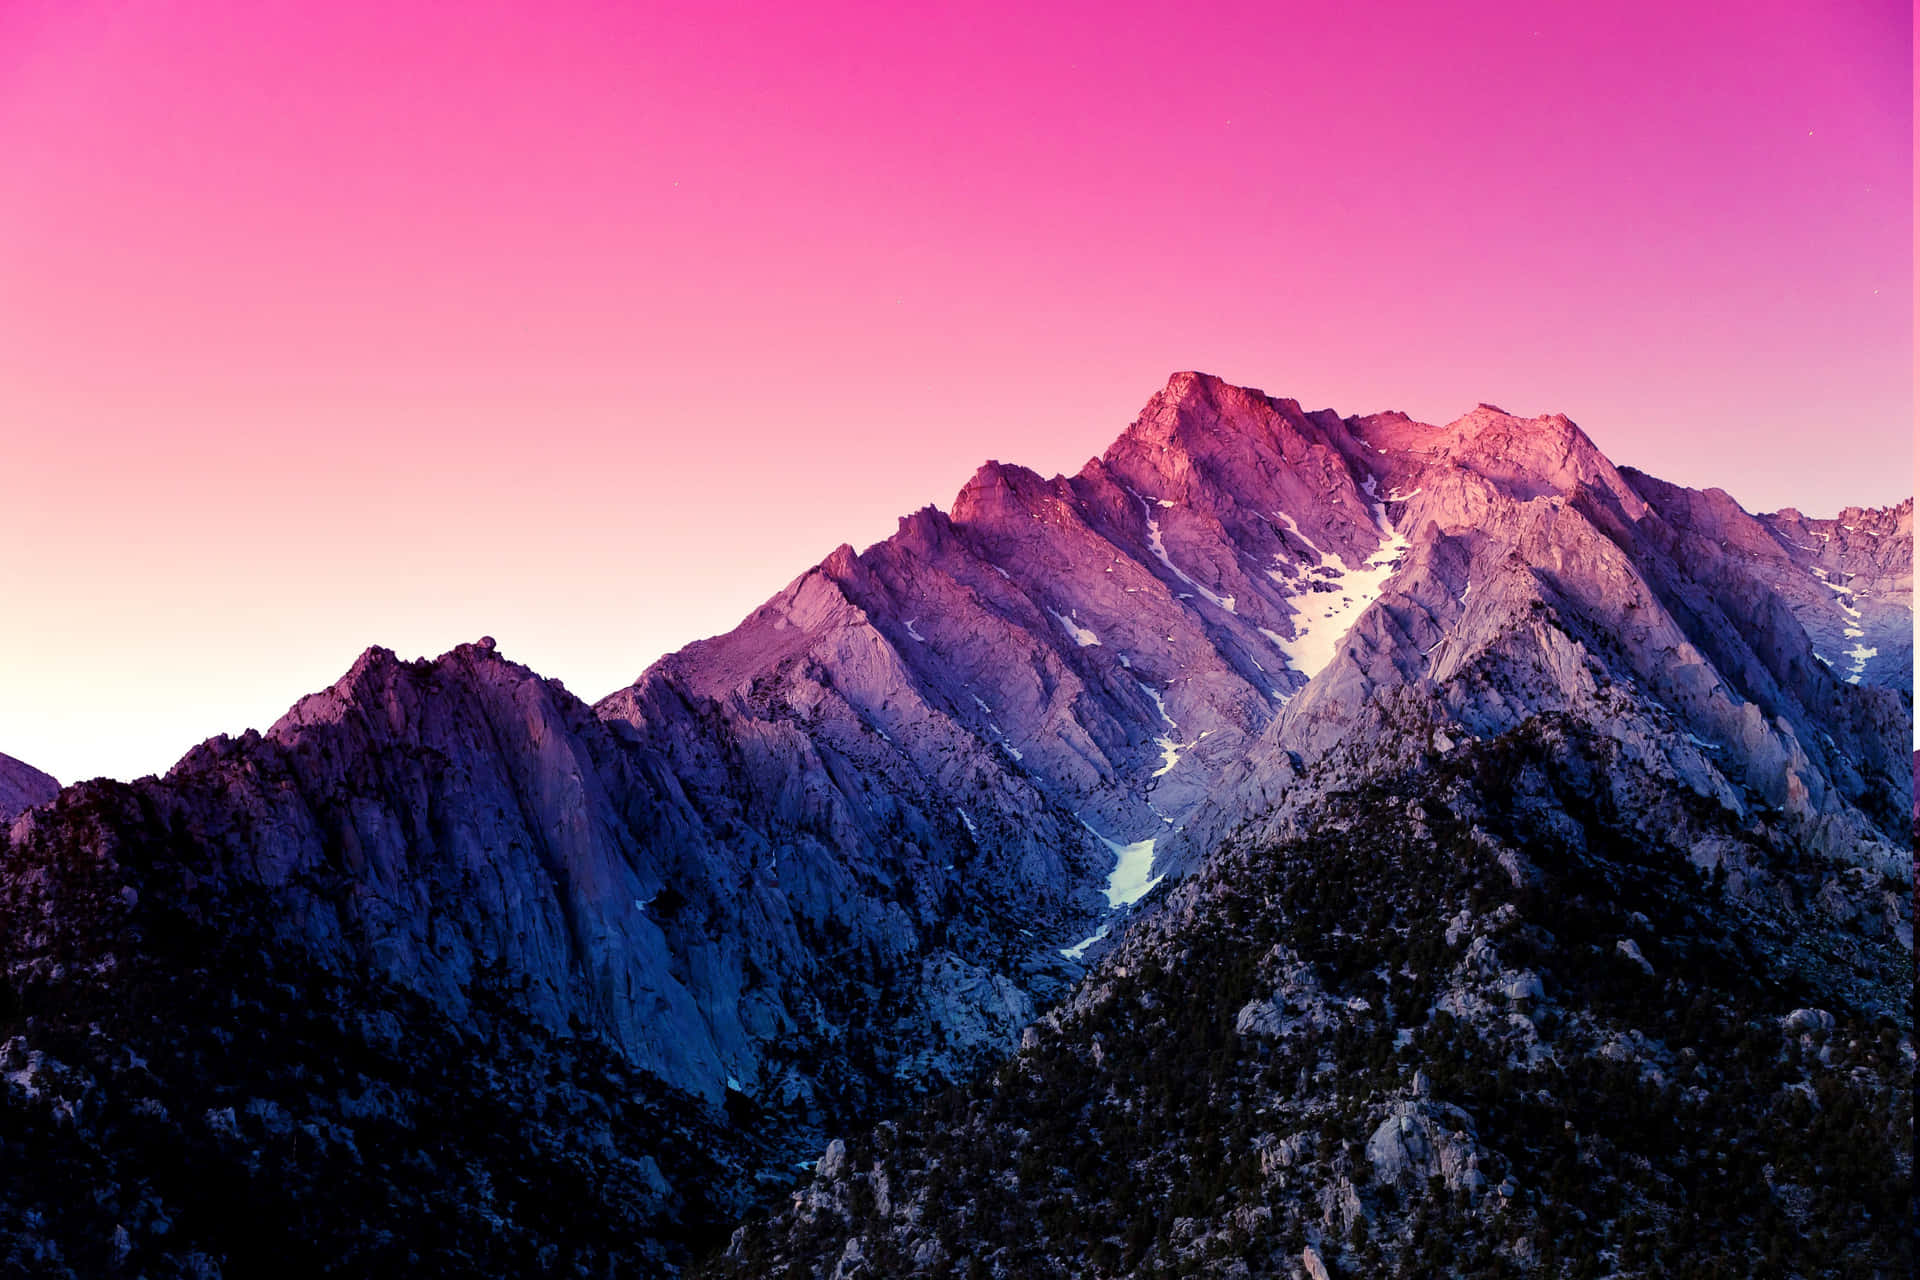 Unavista Impresionante De La Majestuosidad De Las Montañas Purpuras Fondo de pantalla